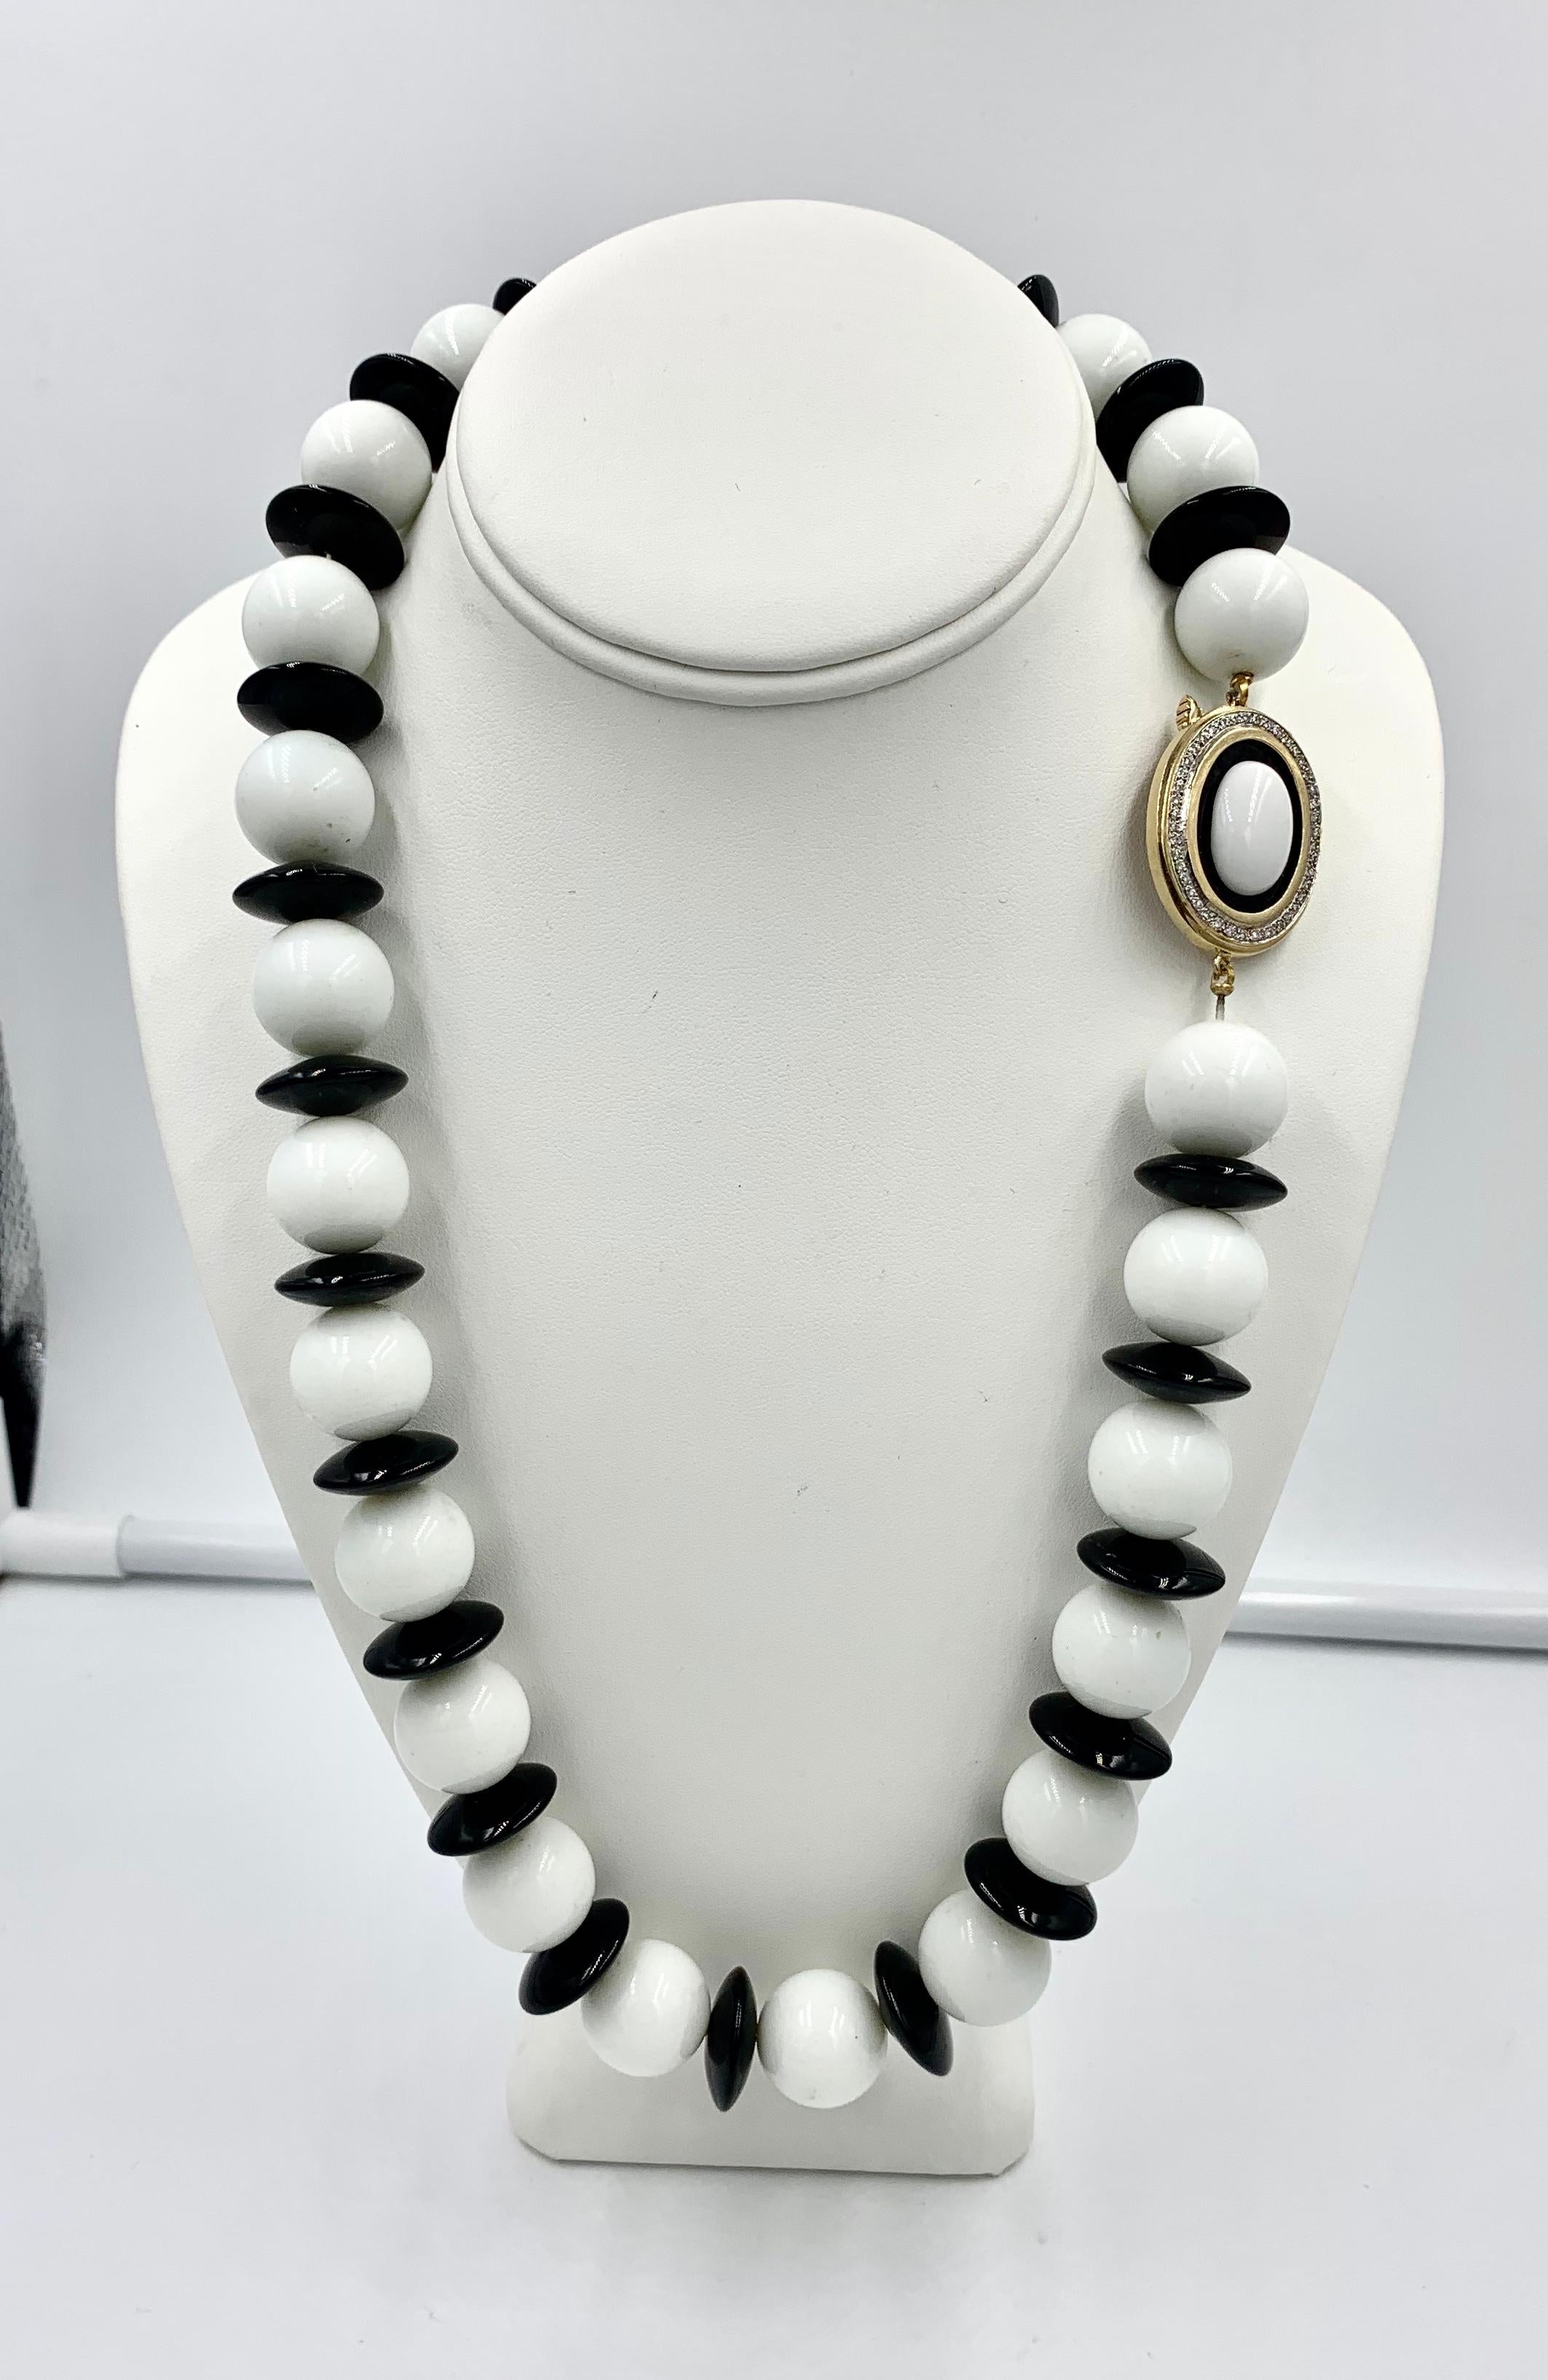 Ce collier en onyx noir et blanc et diamants est l'un des plus beaux et des plus spectaculaires que nous ayons vus.  Les grandes perles d'Onyx blanc alternent avec des disques lisses d'Onyx noir pour créer une cascade de joyaux incroyables.  Le